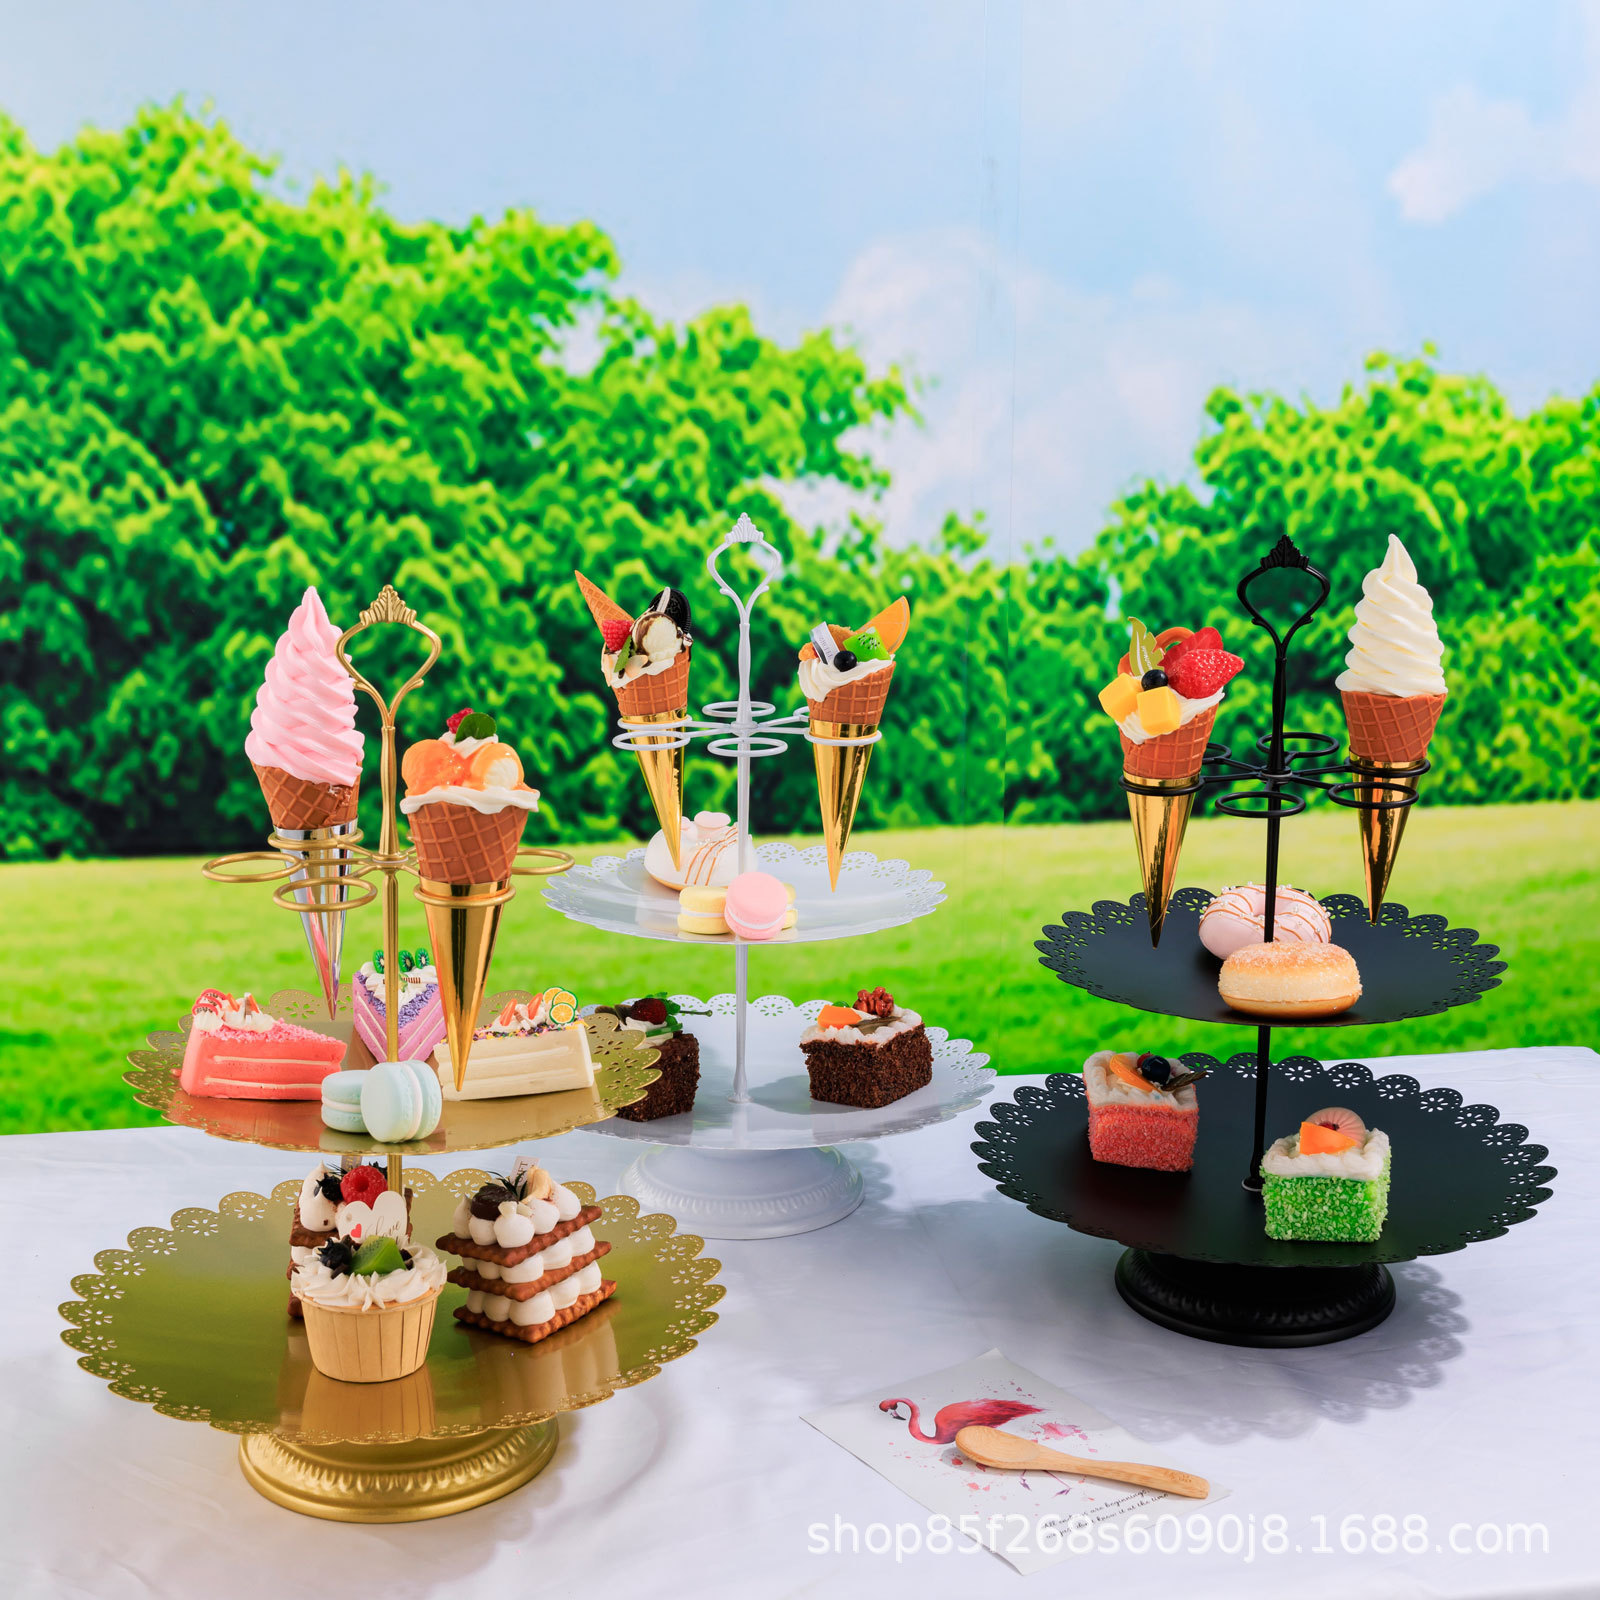 新款蛋糕架可拆卸聚会婚礼派对甜点展示架托盘创意生日道具甜筒架